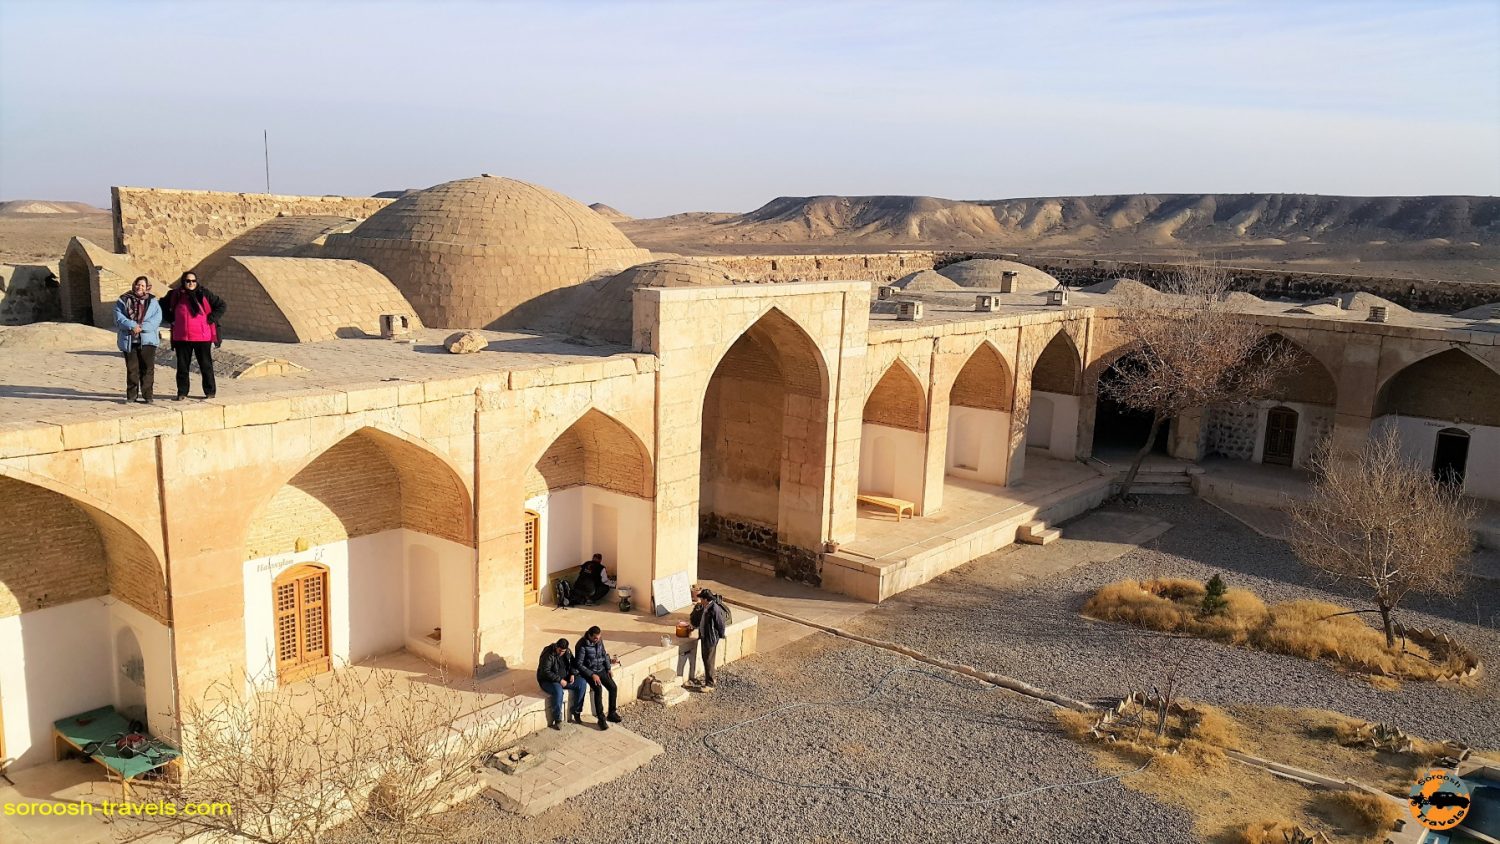 اقامت در کاروانسرای قصر بهرام ، کویر مرکزی ایران - زمستان ۱۳۹۶